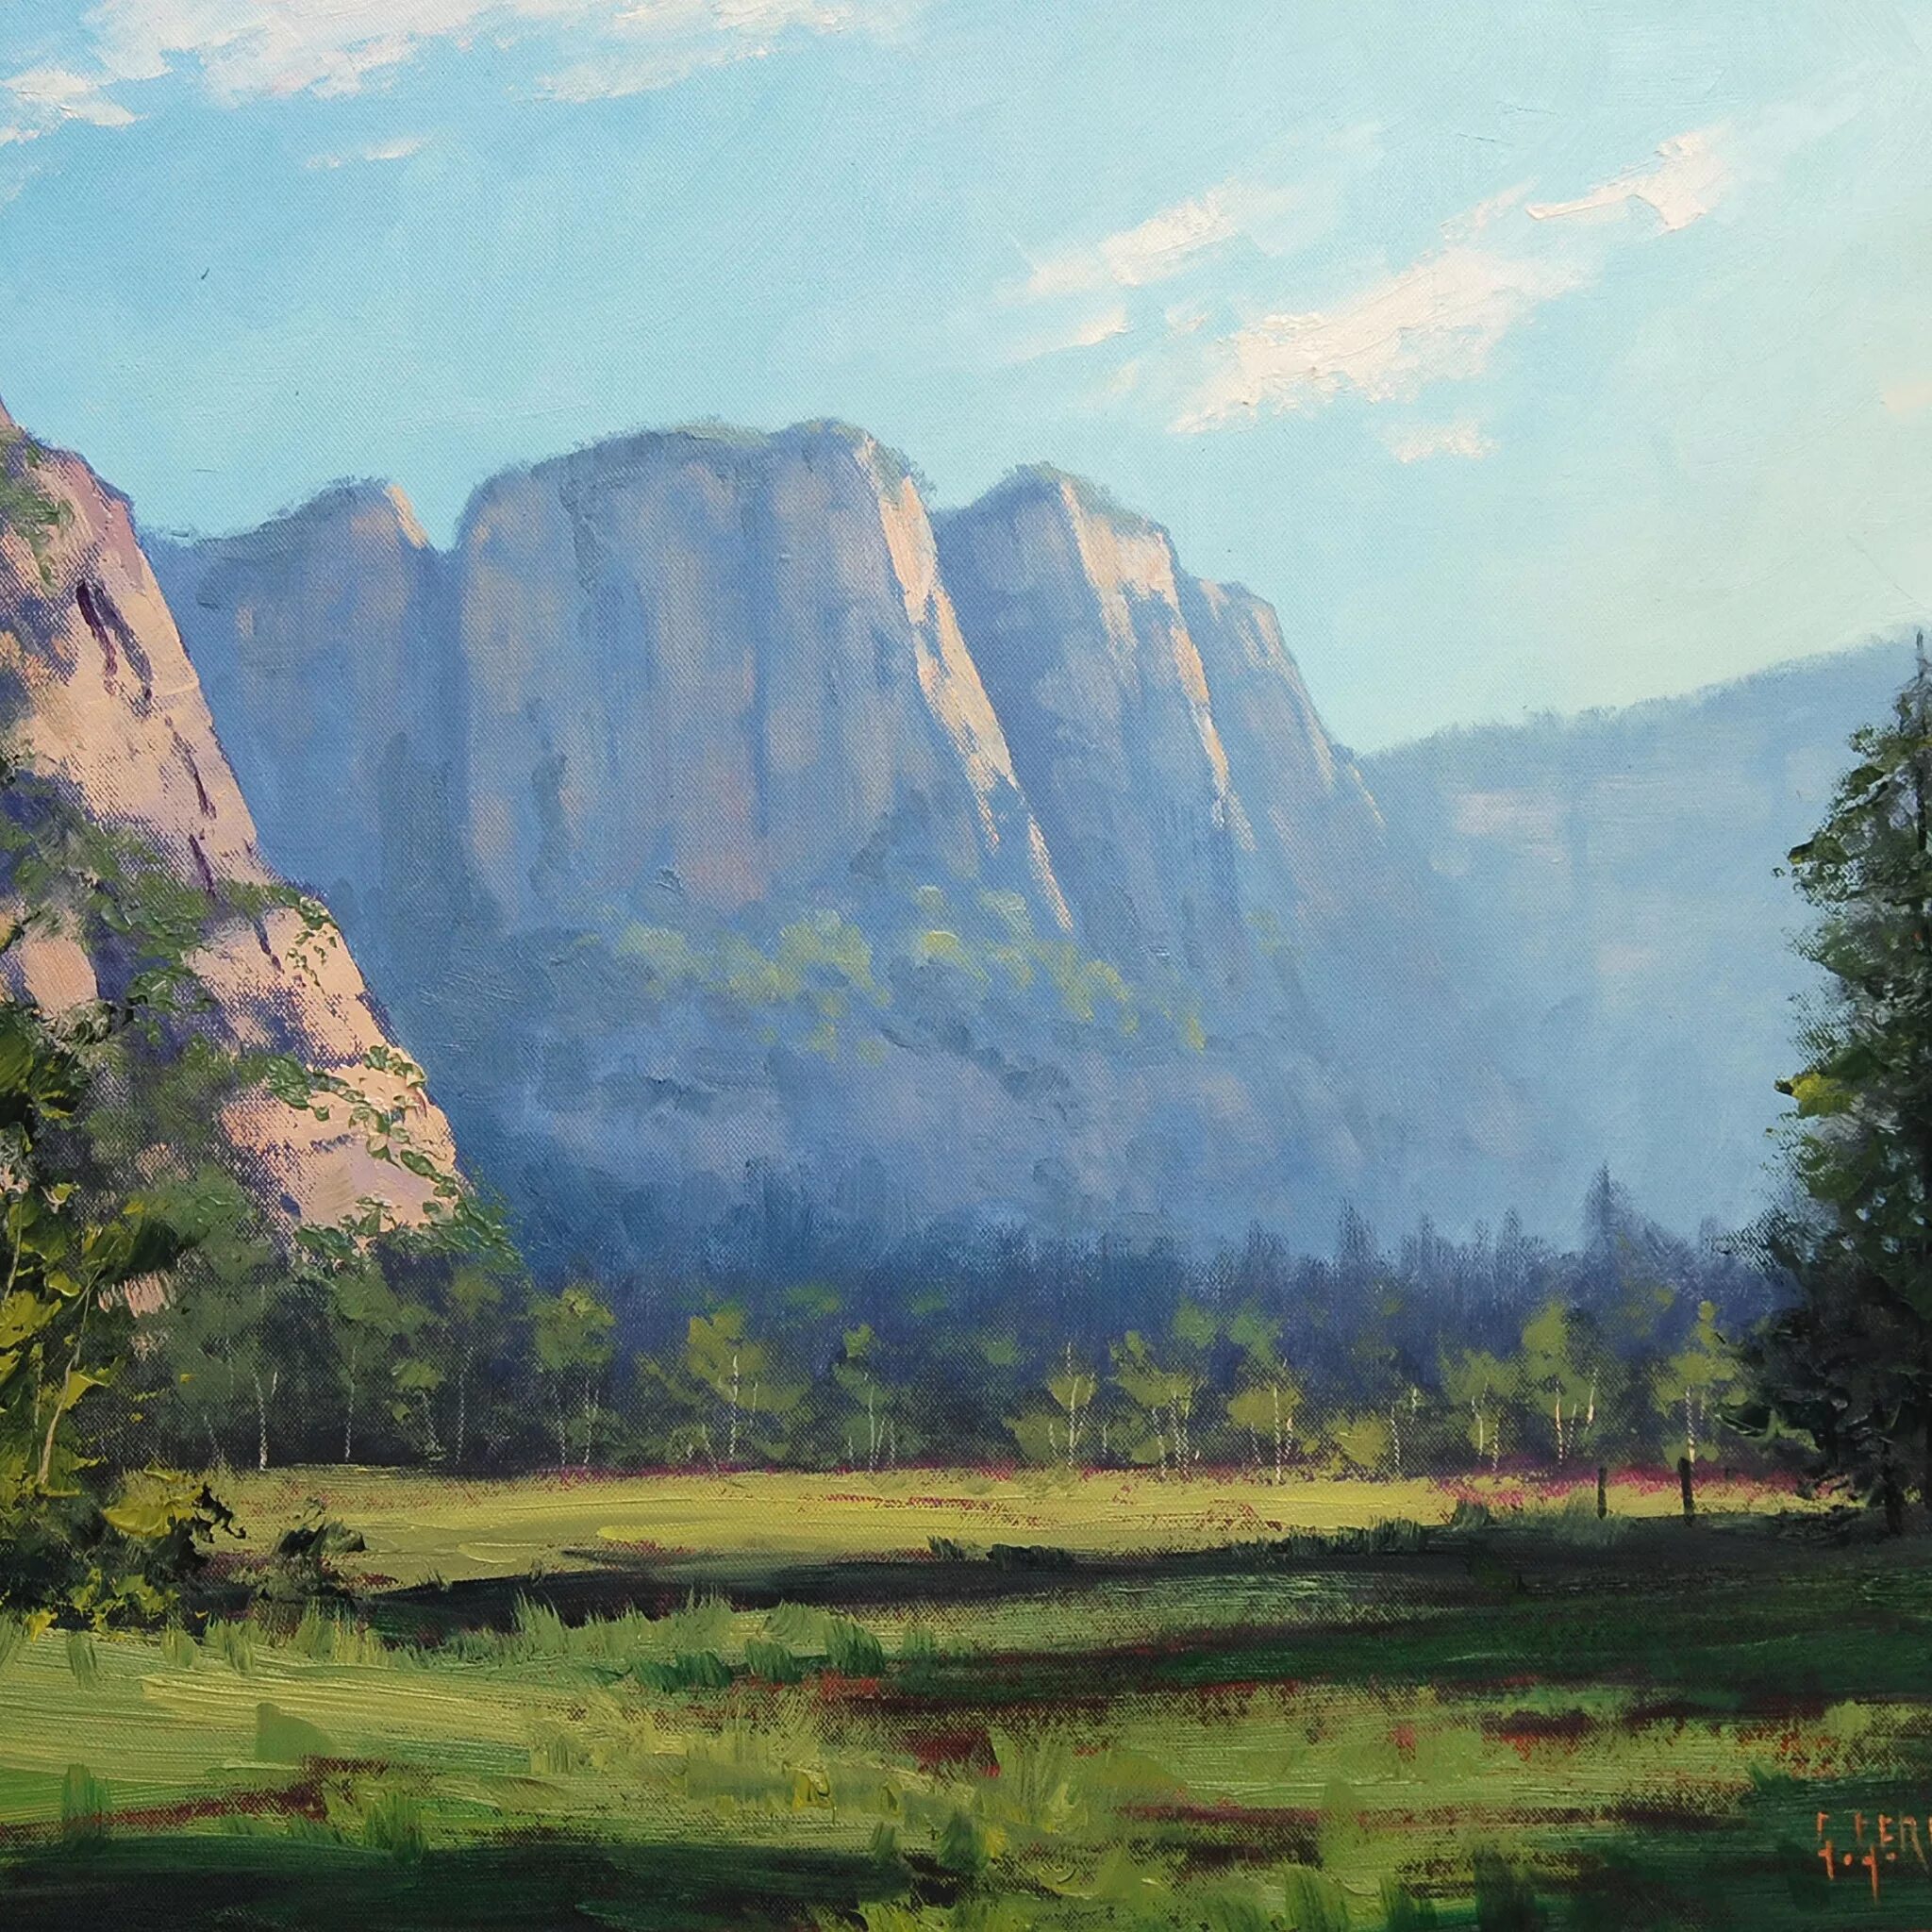 Painted landscape. Graham Gercken картины далёкие горы. Пейзаж маслом. Живописный пейзаж. Картины маслом пейзажи.